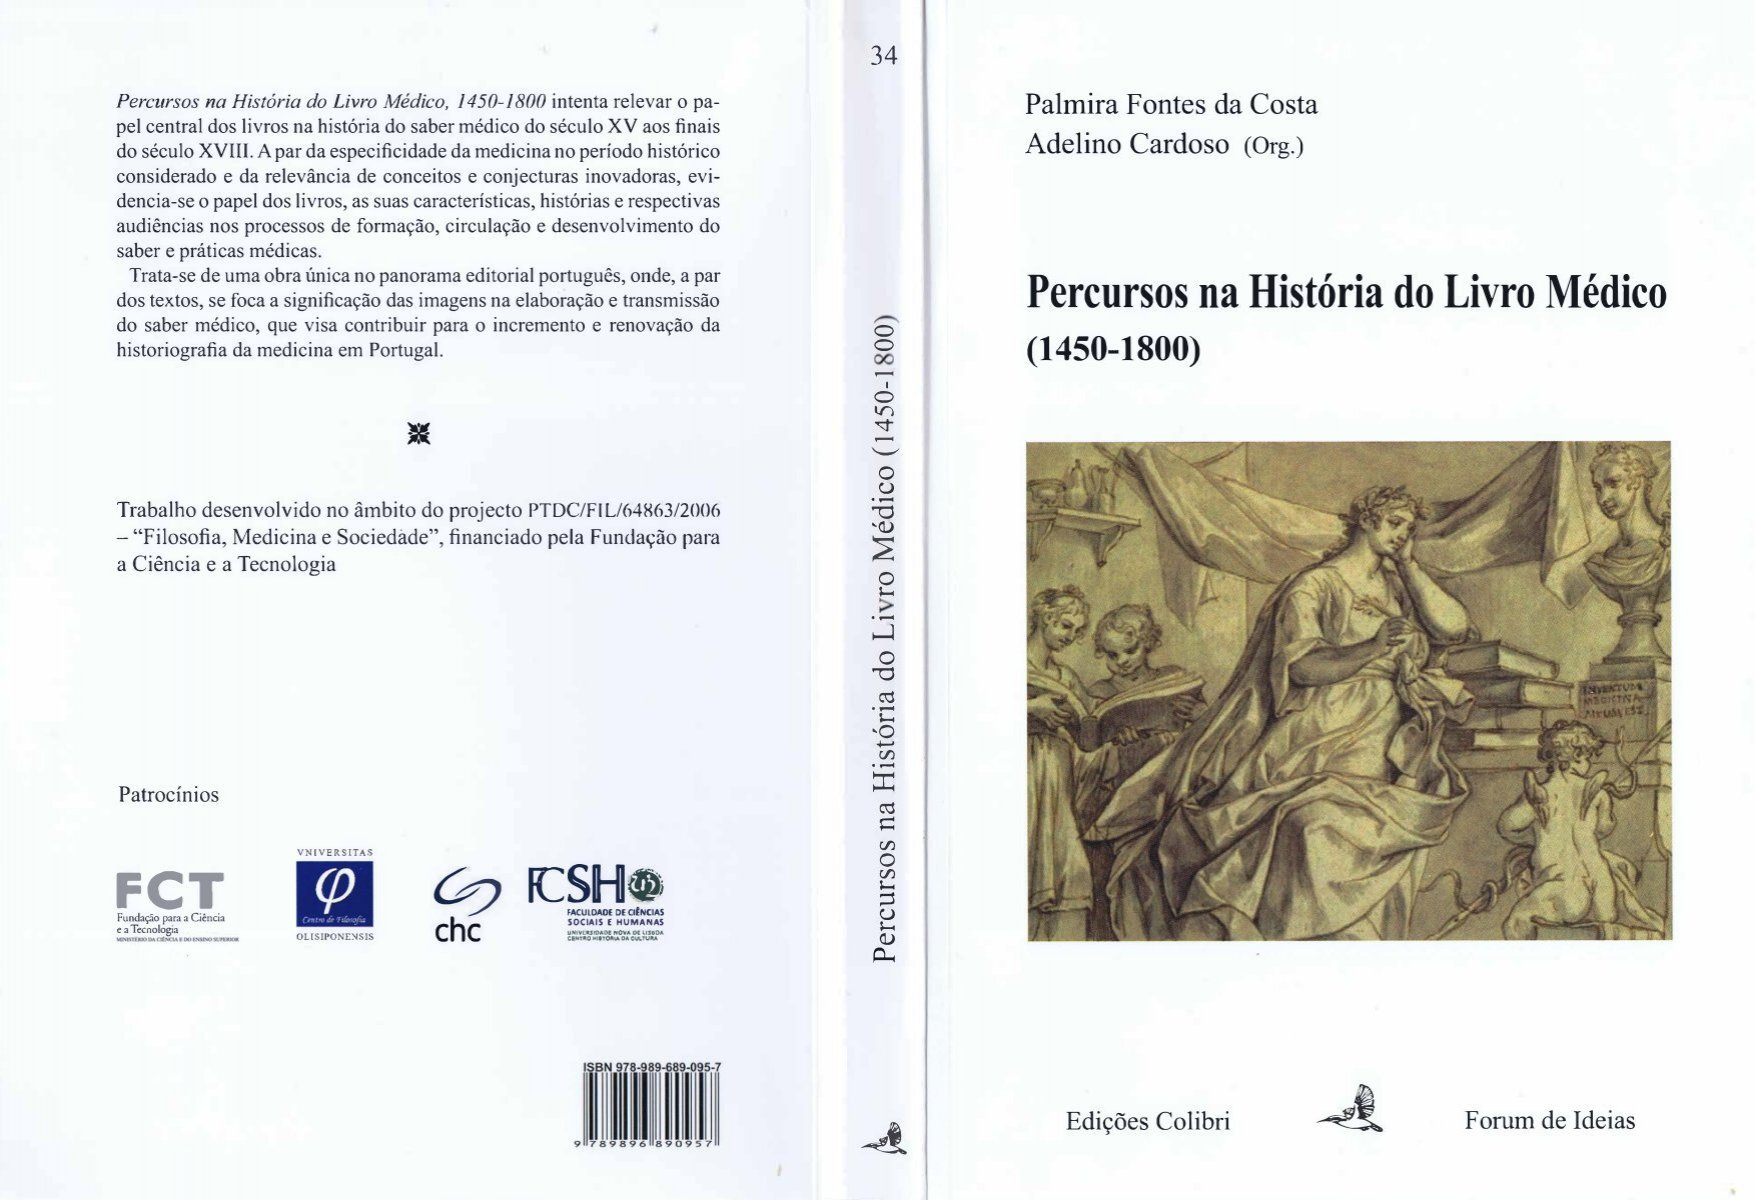 Pedro Espinosa: Estudio Biográfico, Bibliográfico y Crítico (Classic  Reprint)